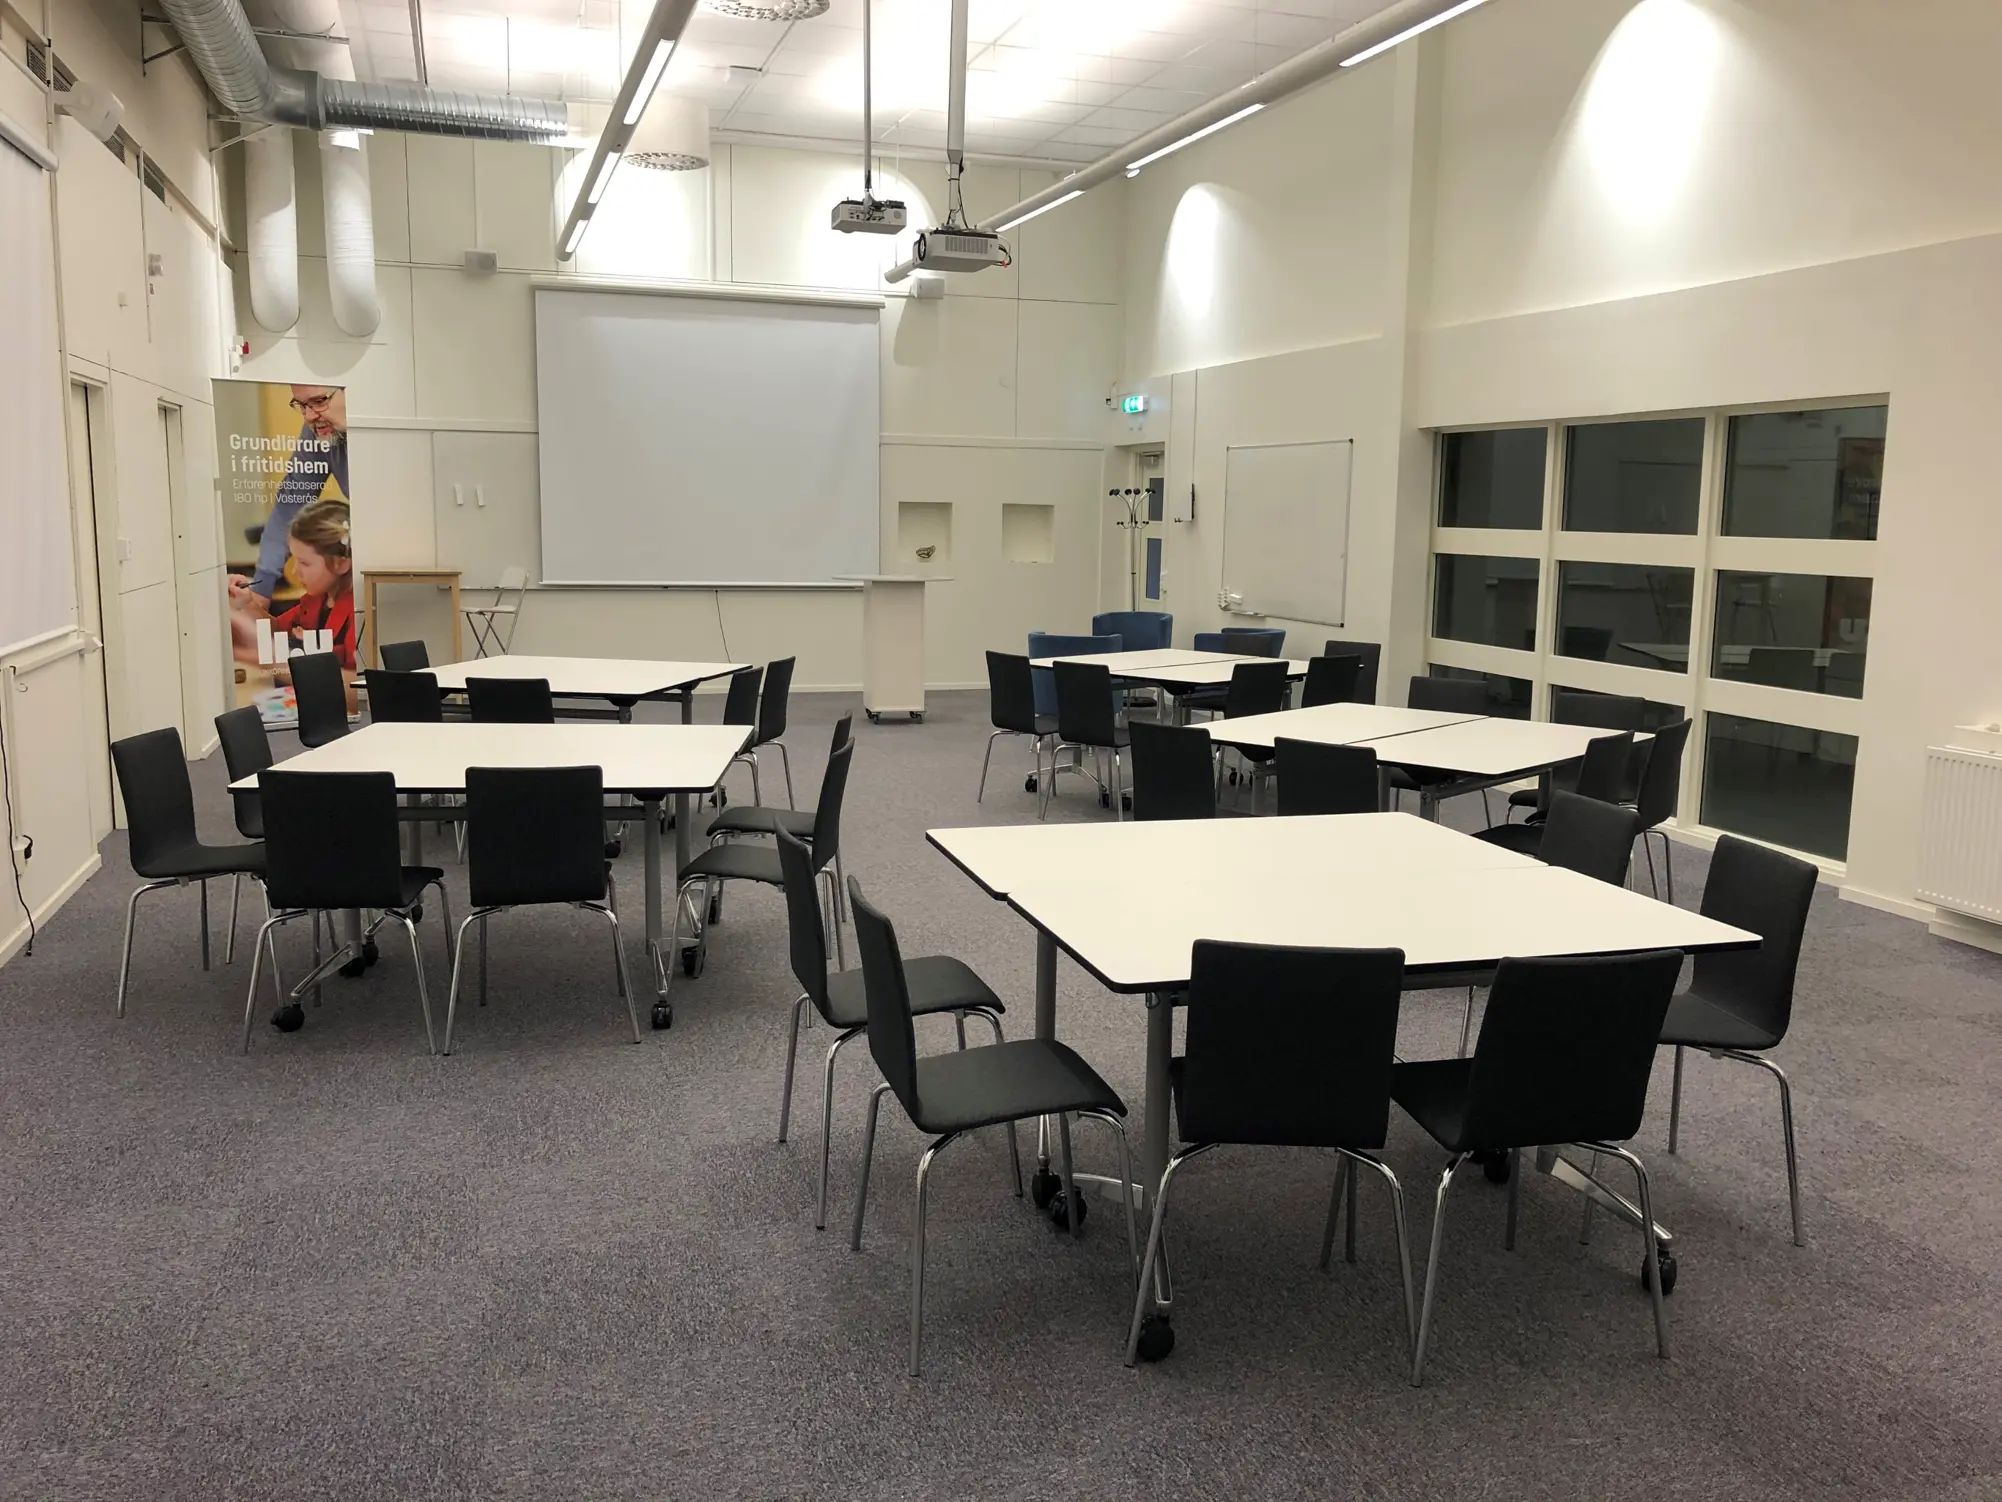 Utbildningslokal med stolar och bord